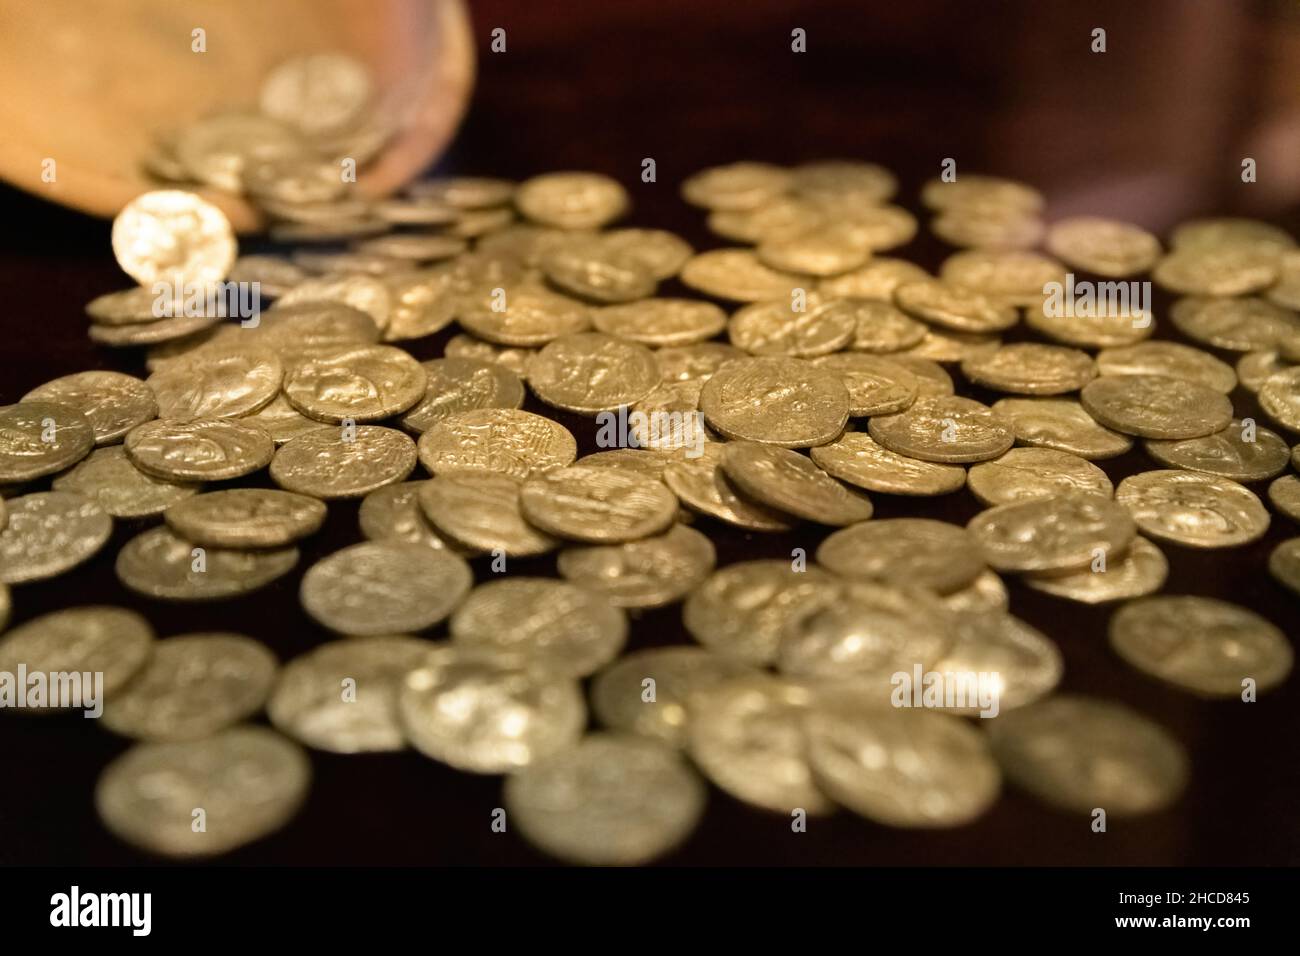 Schatzkammer der antiken griechischen Silbermünzen auf dunklem Hintergrund Stockfoto